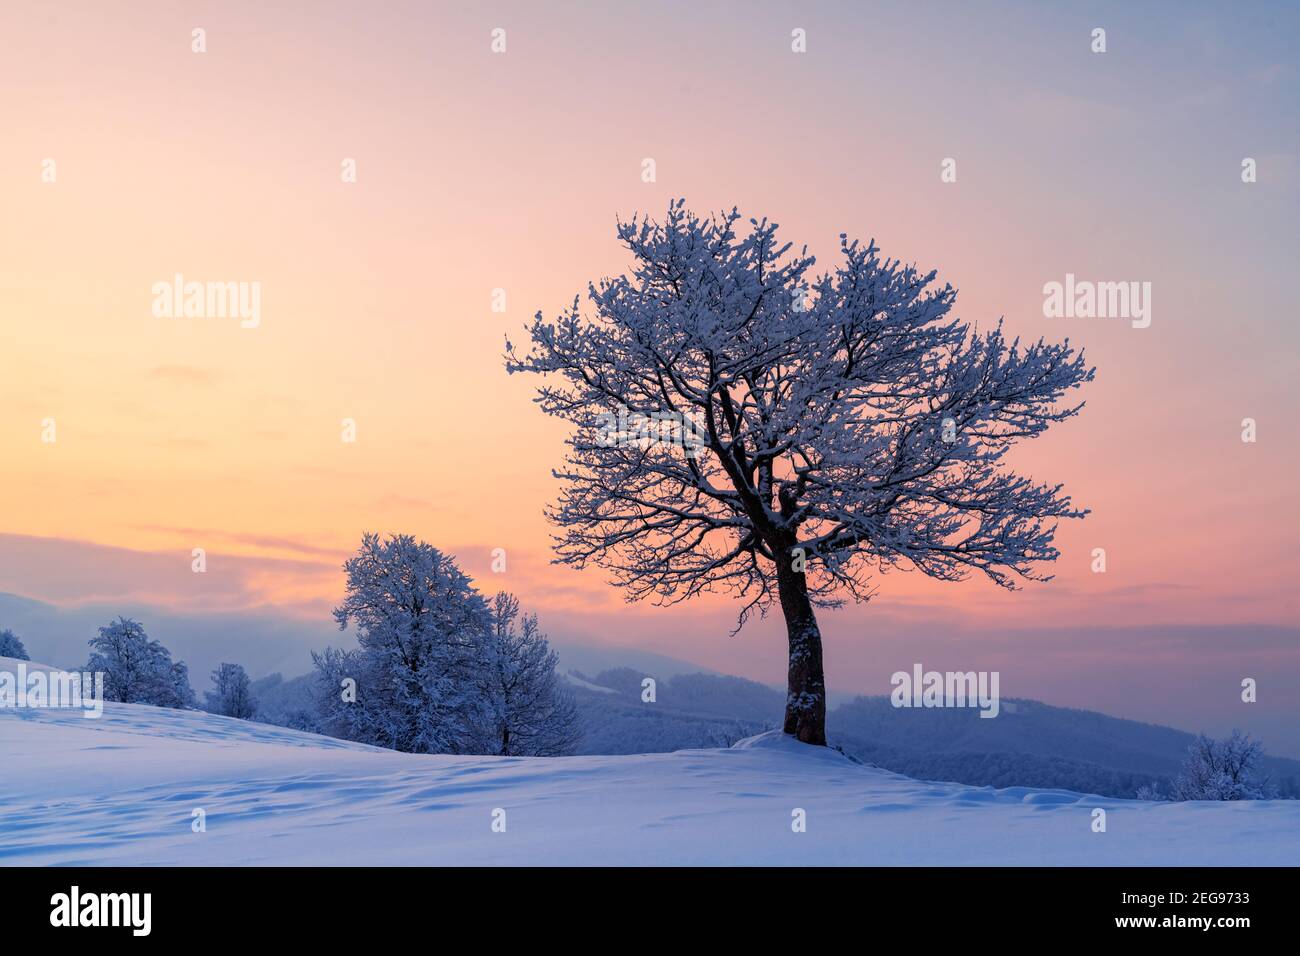 Erstaunliche Winterlandschaft mit einem einsamen verschneiten Baum auf einem Bergtal. Rosa Sonnenaufgangshimmel leuchtet auf dem Hintergrund. Landschaftsfotografie Stockfoto